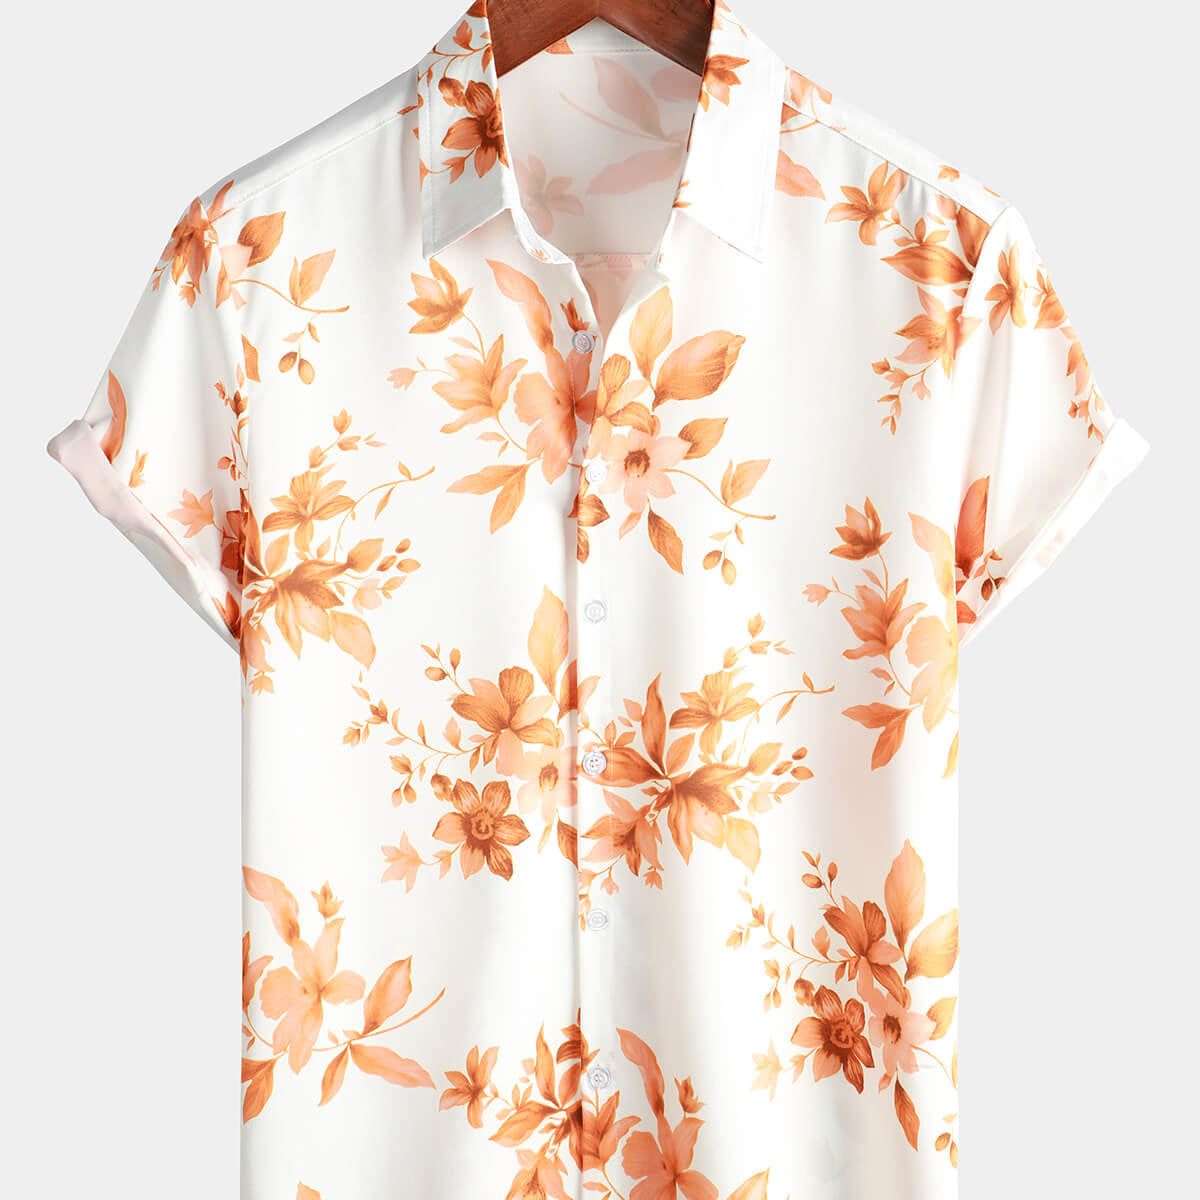 Men's Brown Floral Print Flower Short Sleeve Beach Button Up Vintage Hawaiian Shirt